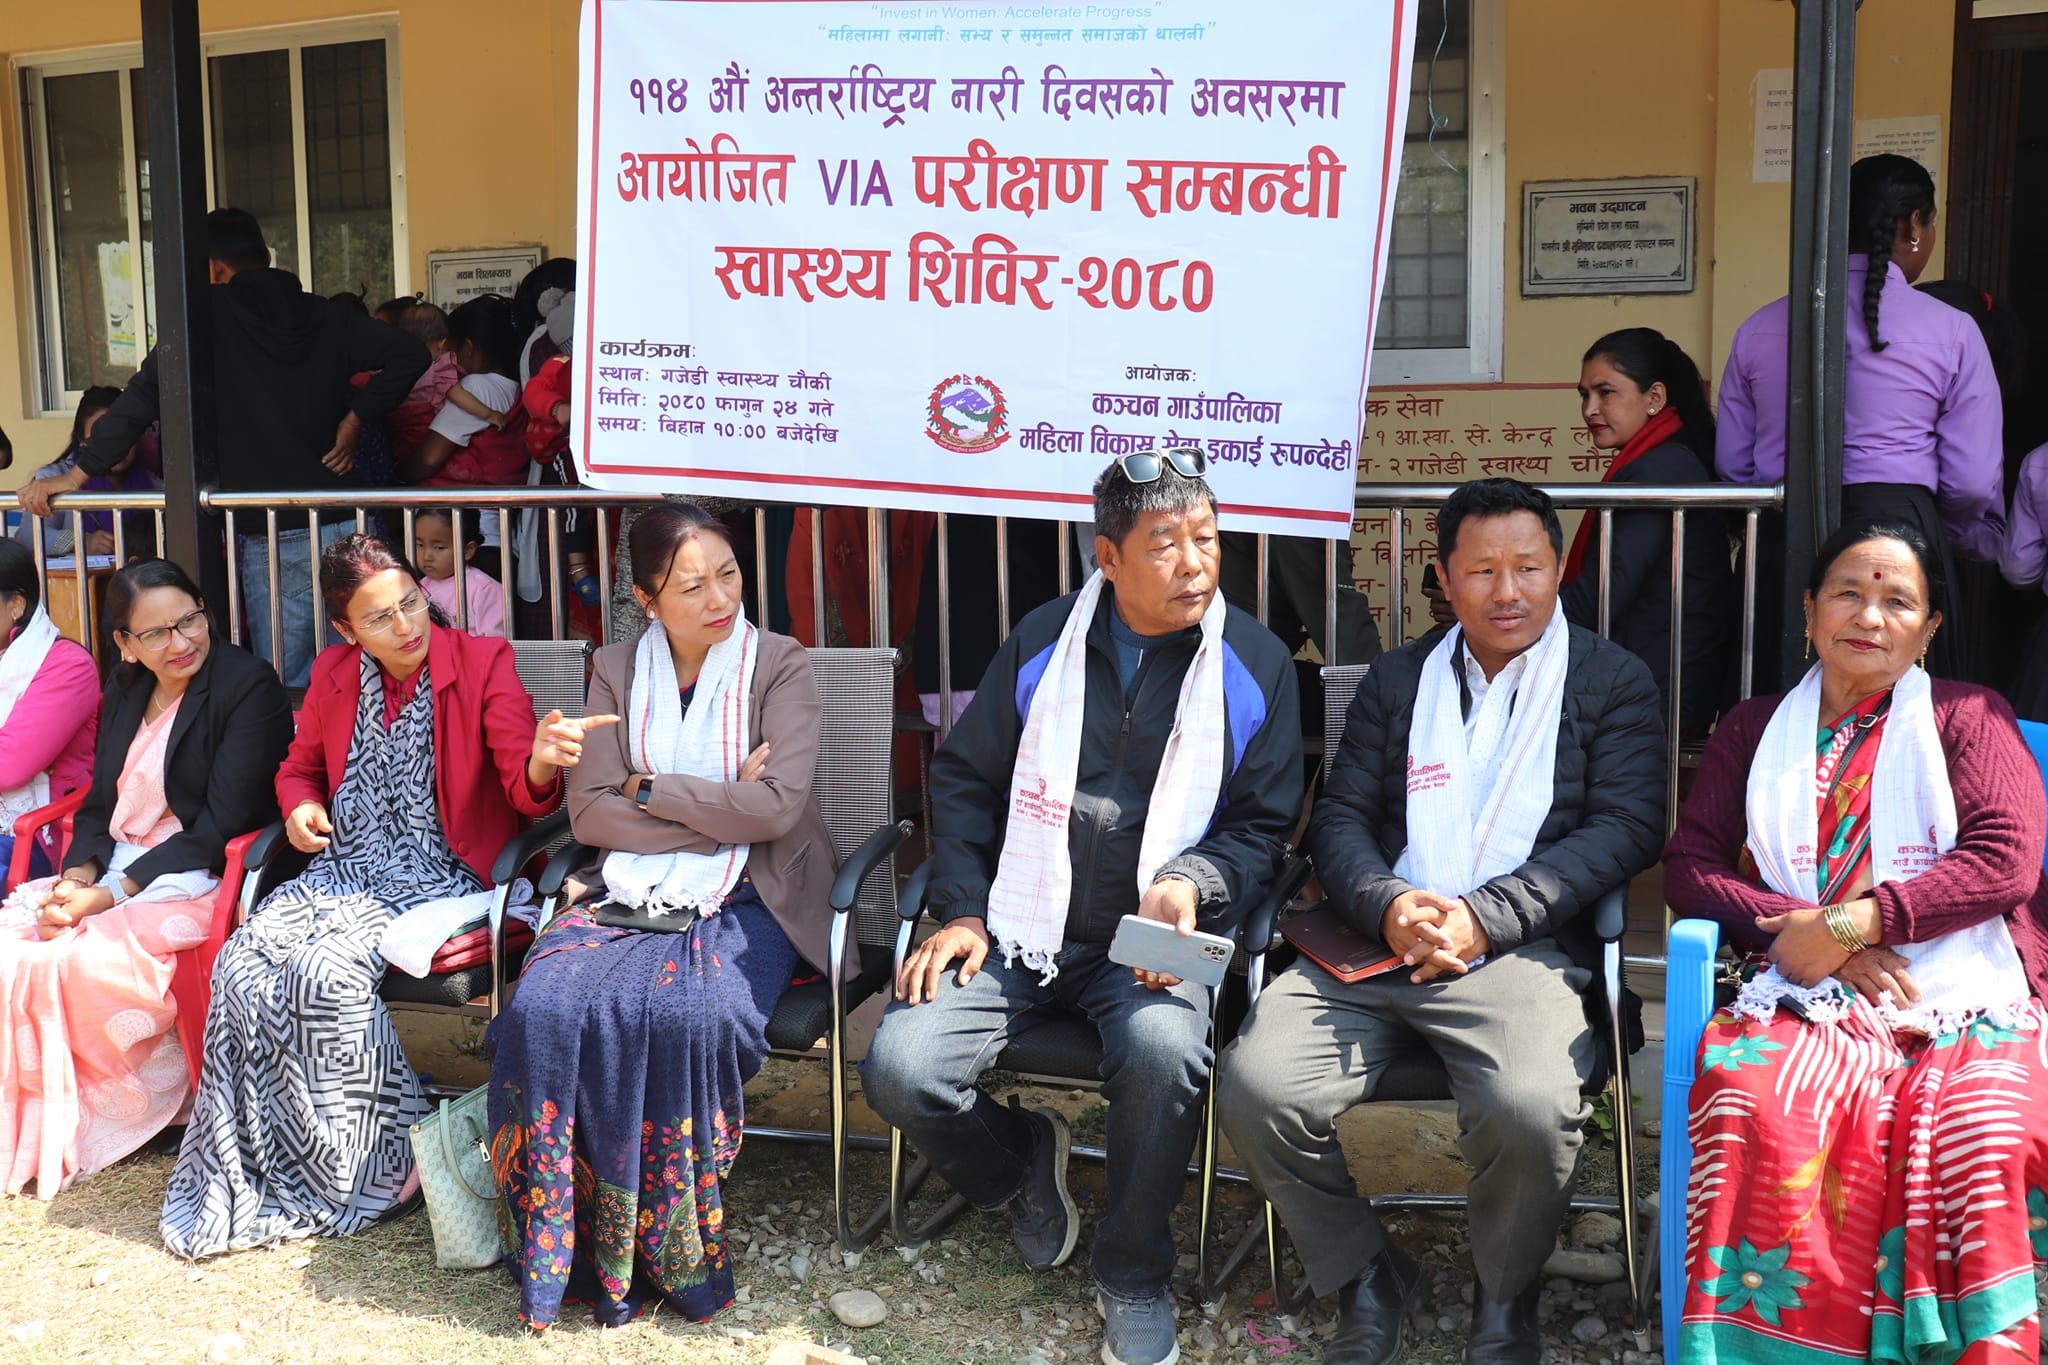 कञ्चनमा अन्तराष्ट्रिय श्रमिक महिला दिवसको अवसरमा महिलाहरुको VIA परिक्षण शिविर